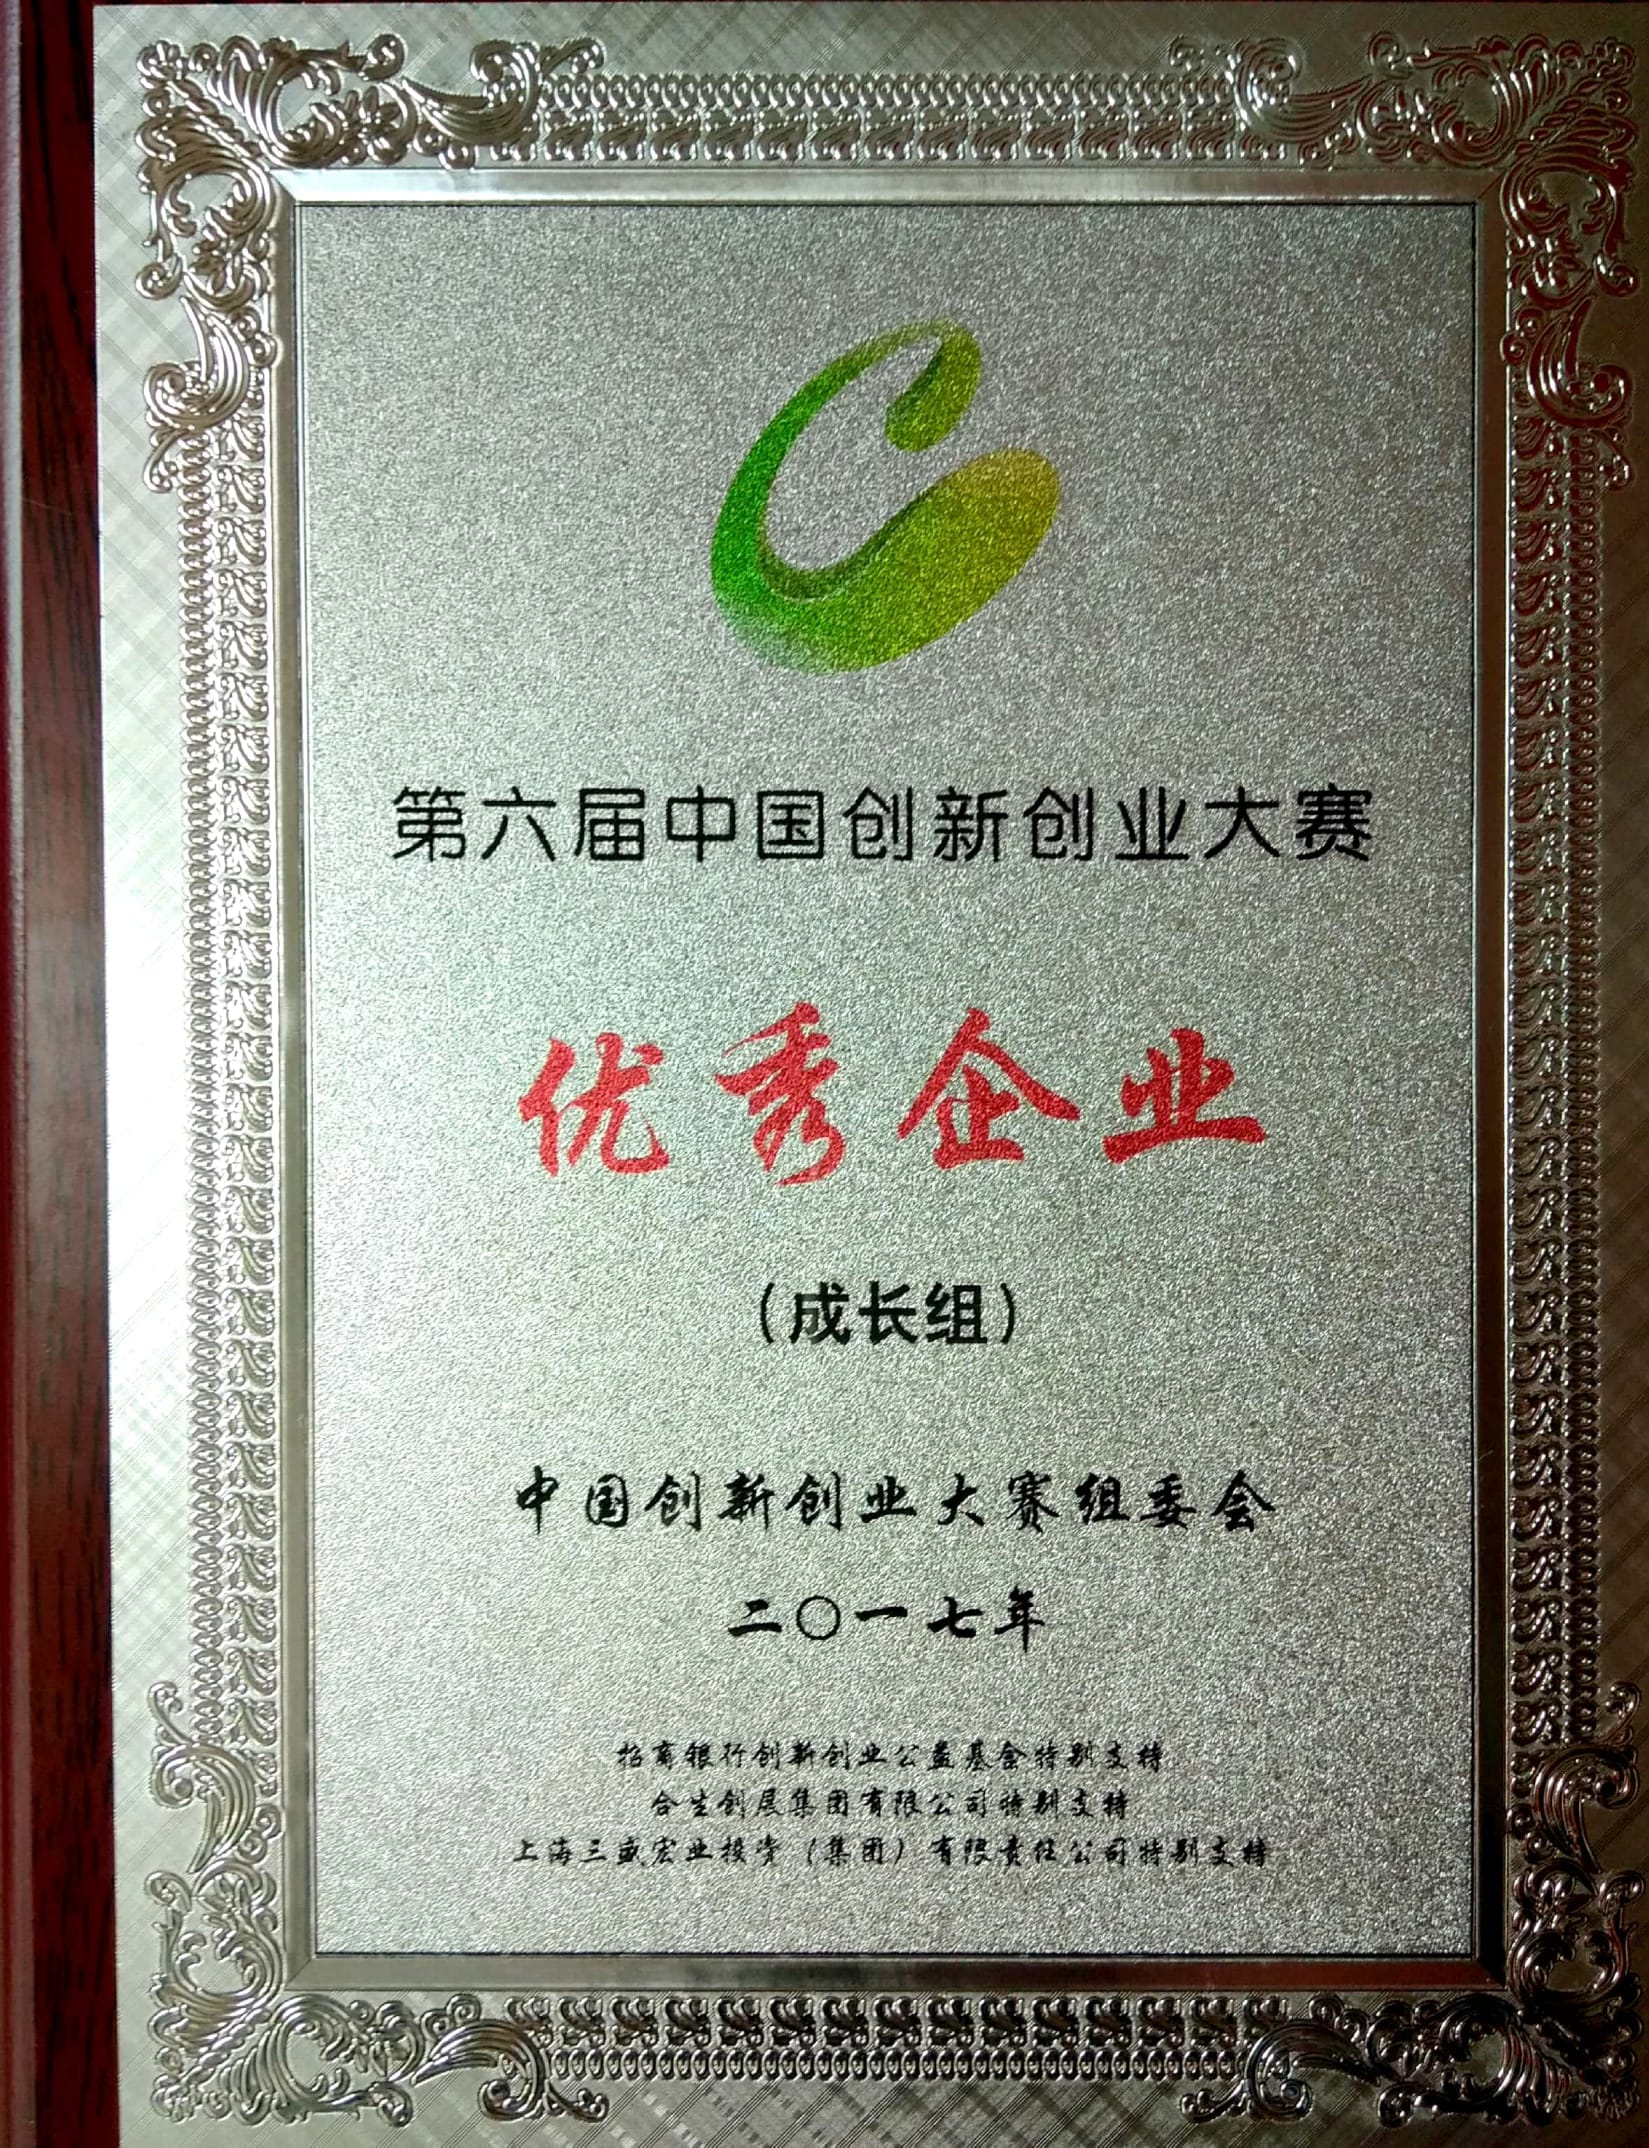 荣获第六届中国创新创业大赛成长组优秀企业奖.jpg